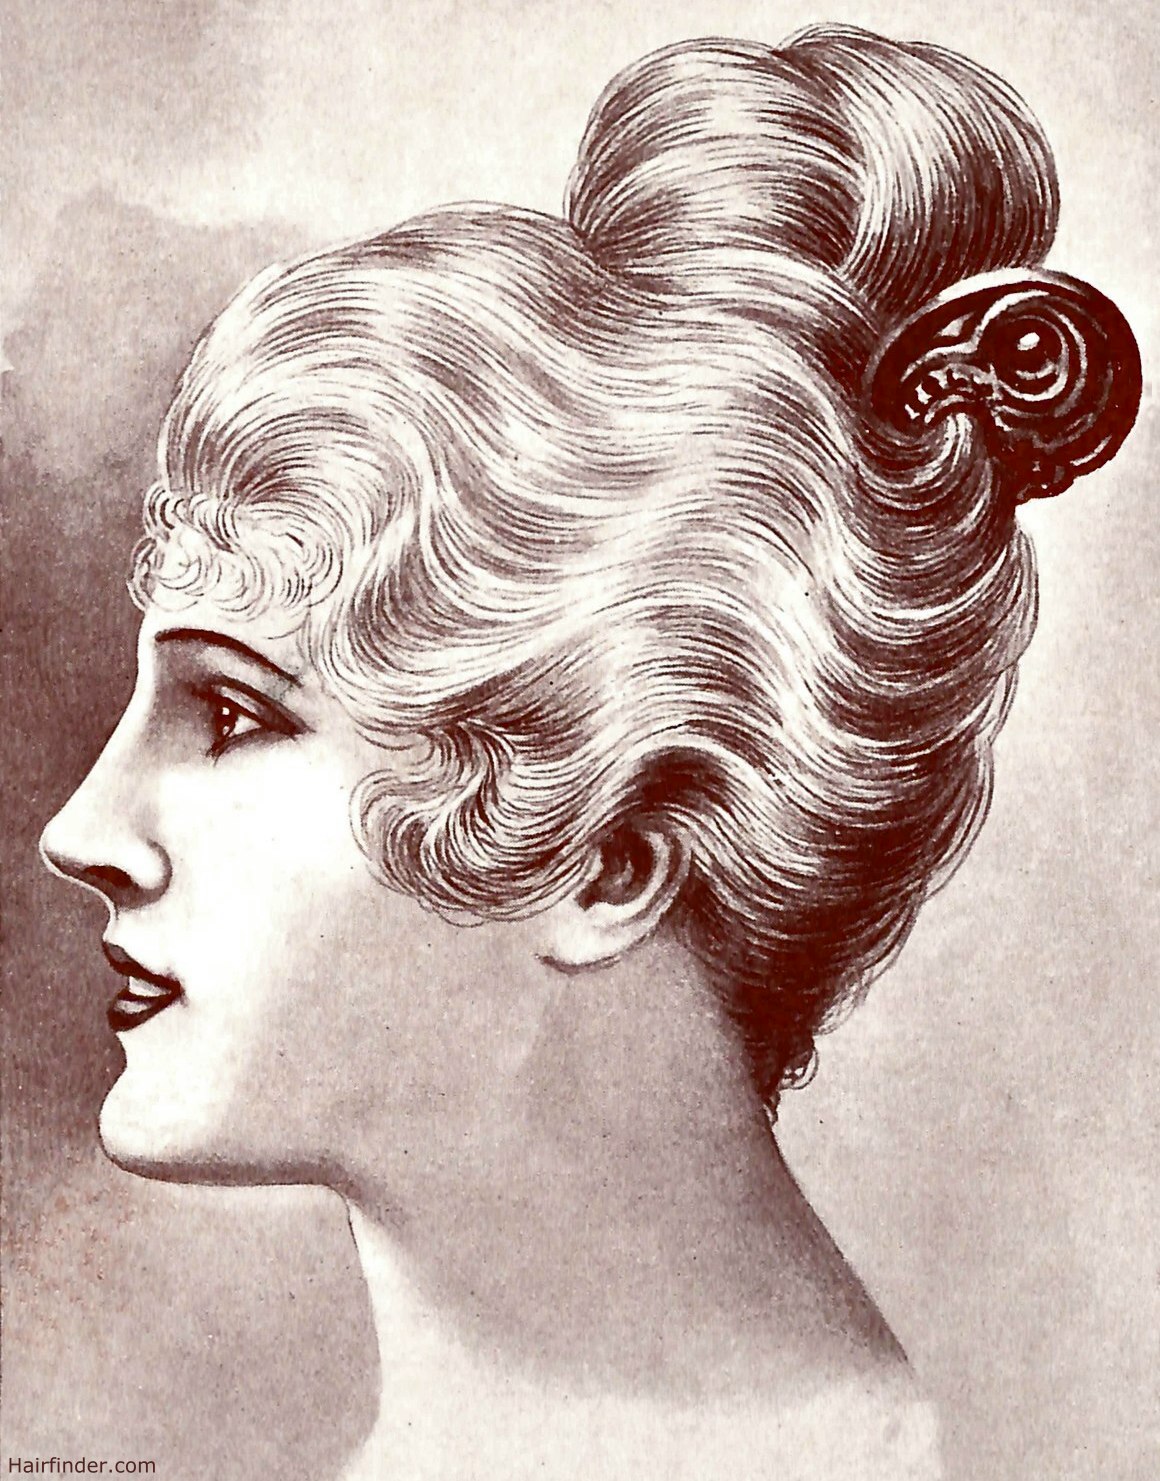 Women's 1920s Hairstyles: An Overview - Hair & Makeup Artist Handbook